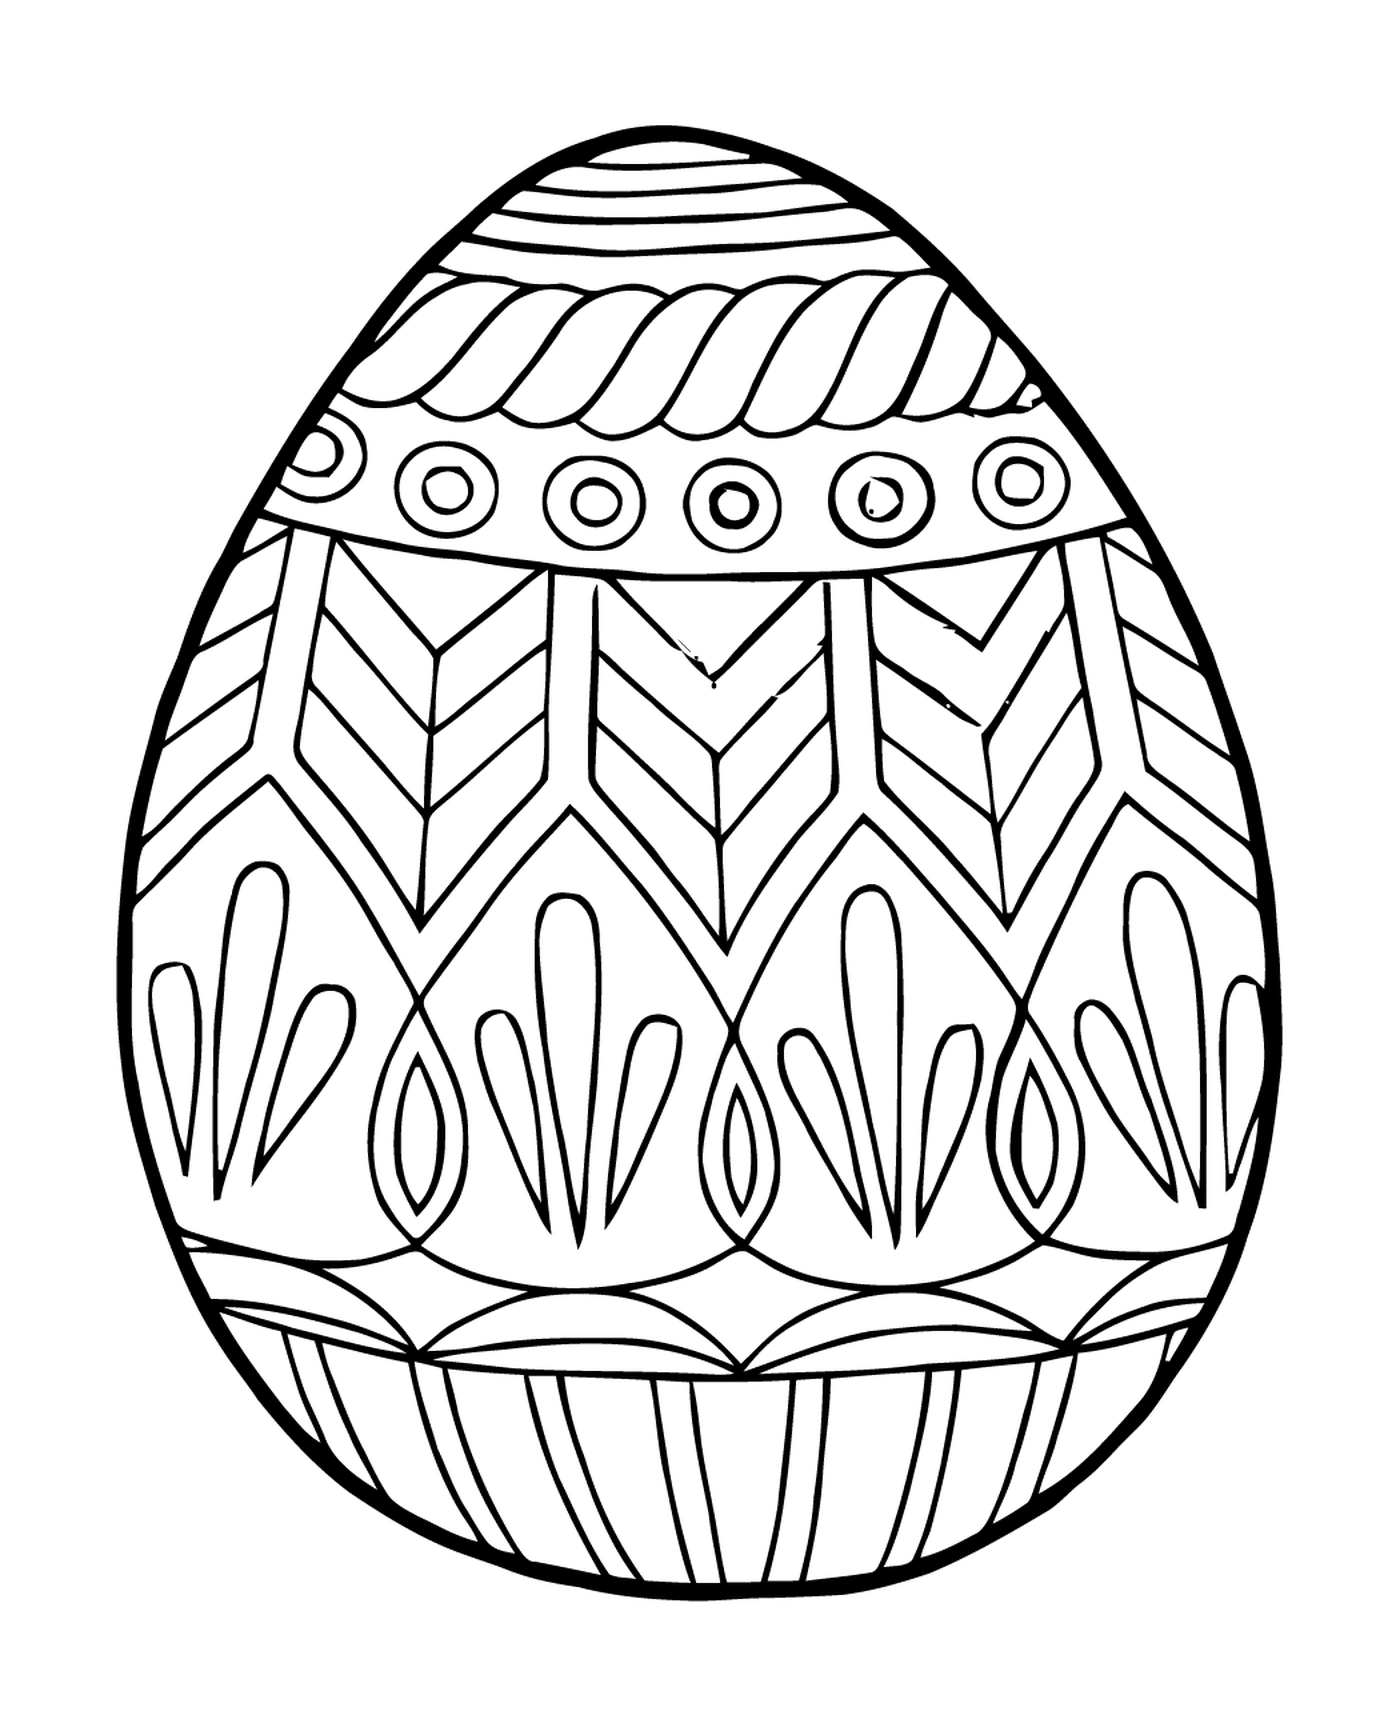  Páscoa Adulto Stress Reliever Mandala, um ovo colorido 